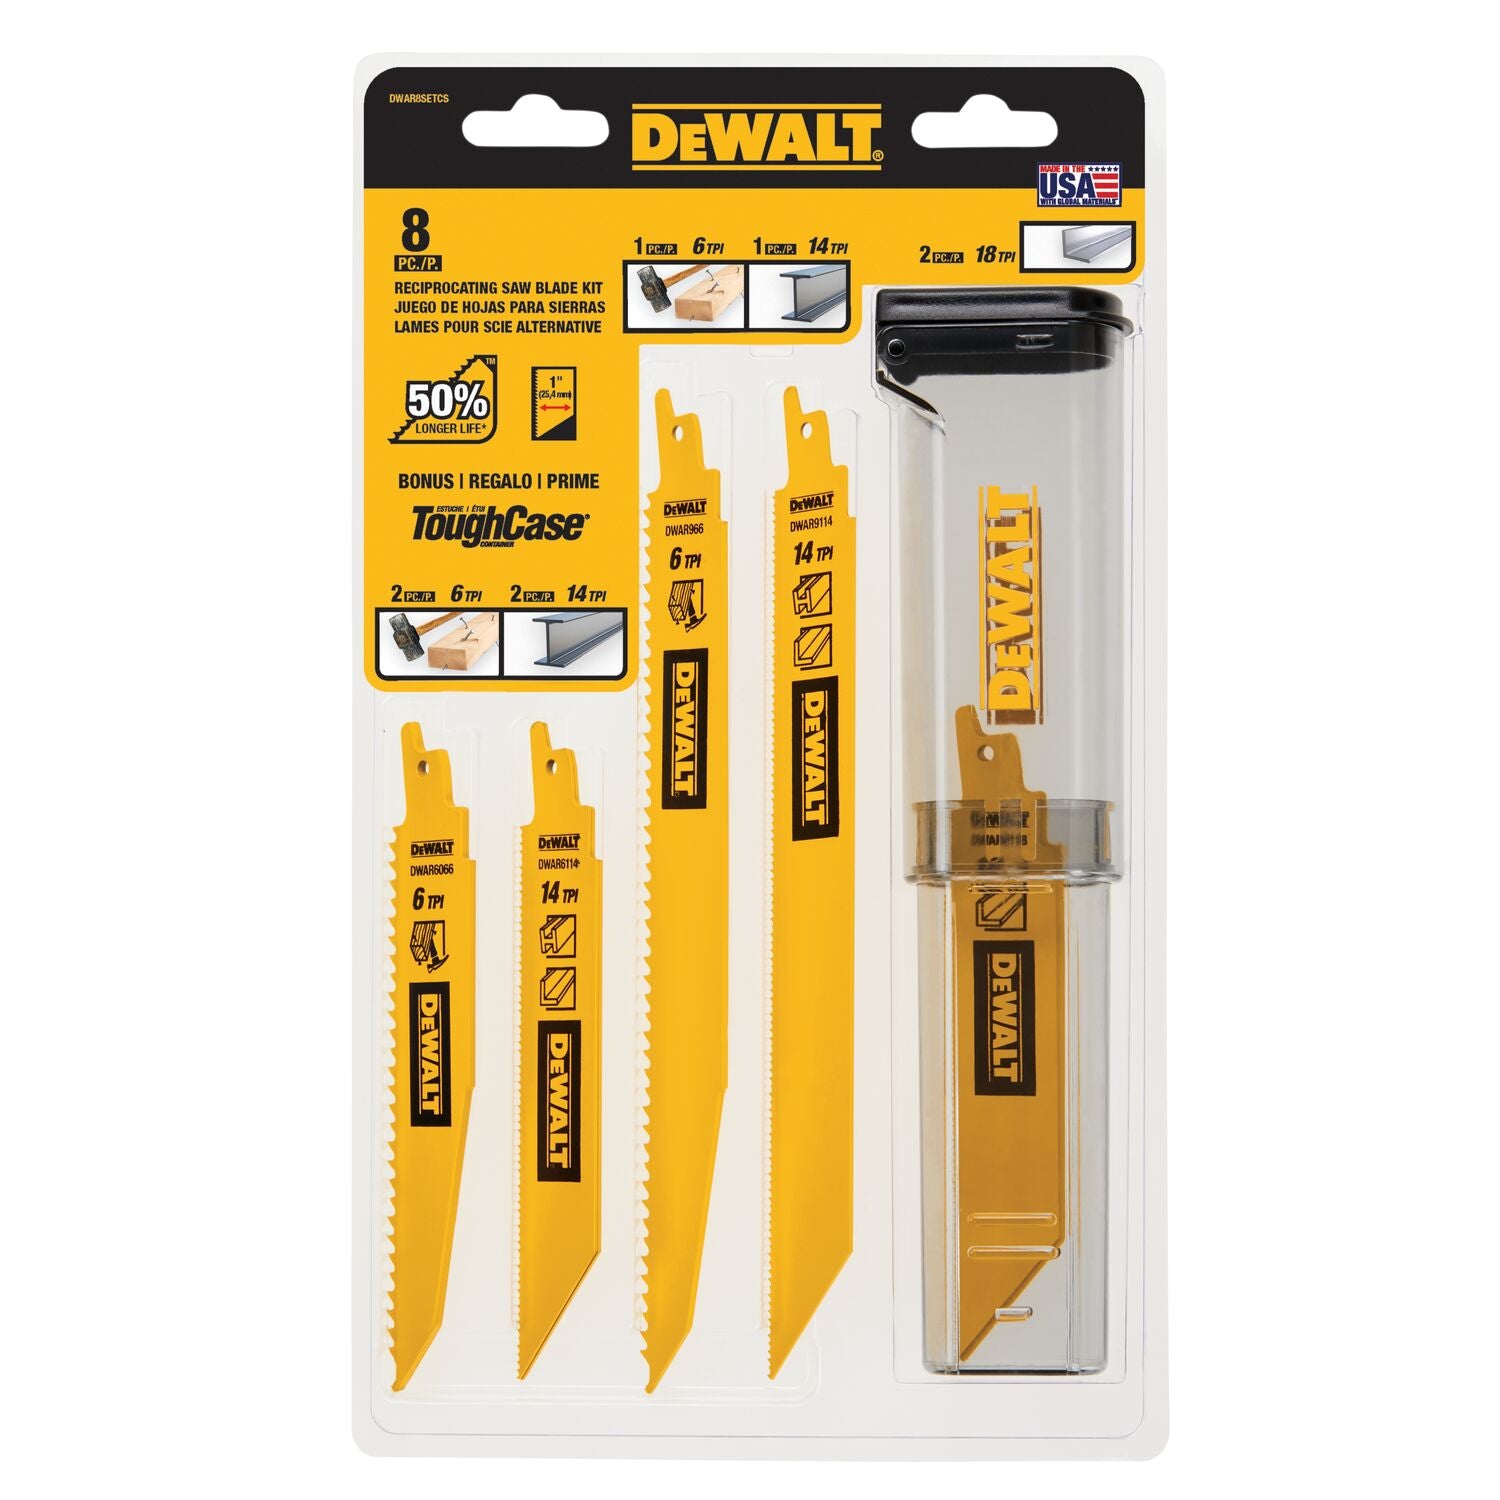 DEWALT DWAR8SETCS Assorted TPI Bi-Metal Reciprocating Saw Blade Set for Wood, Metal, 8-pc